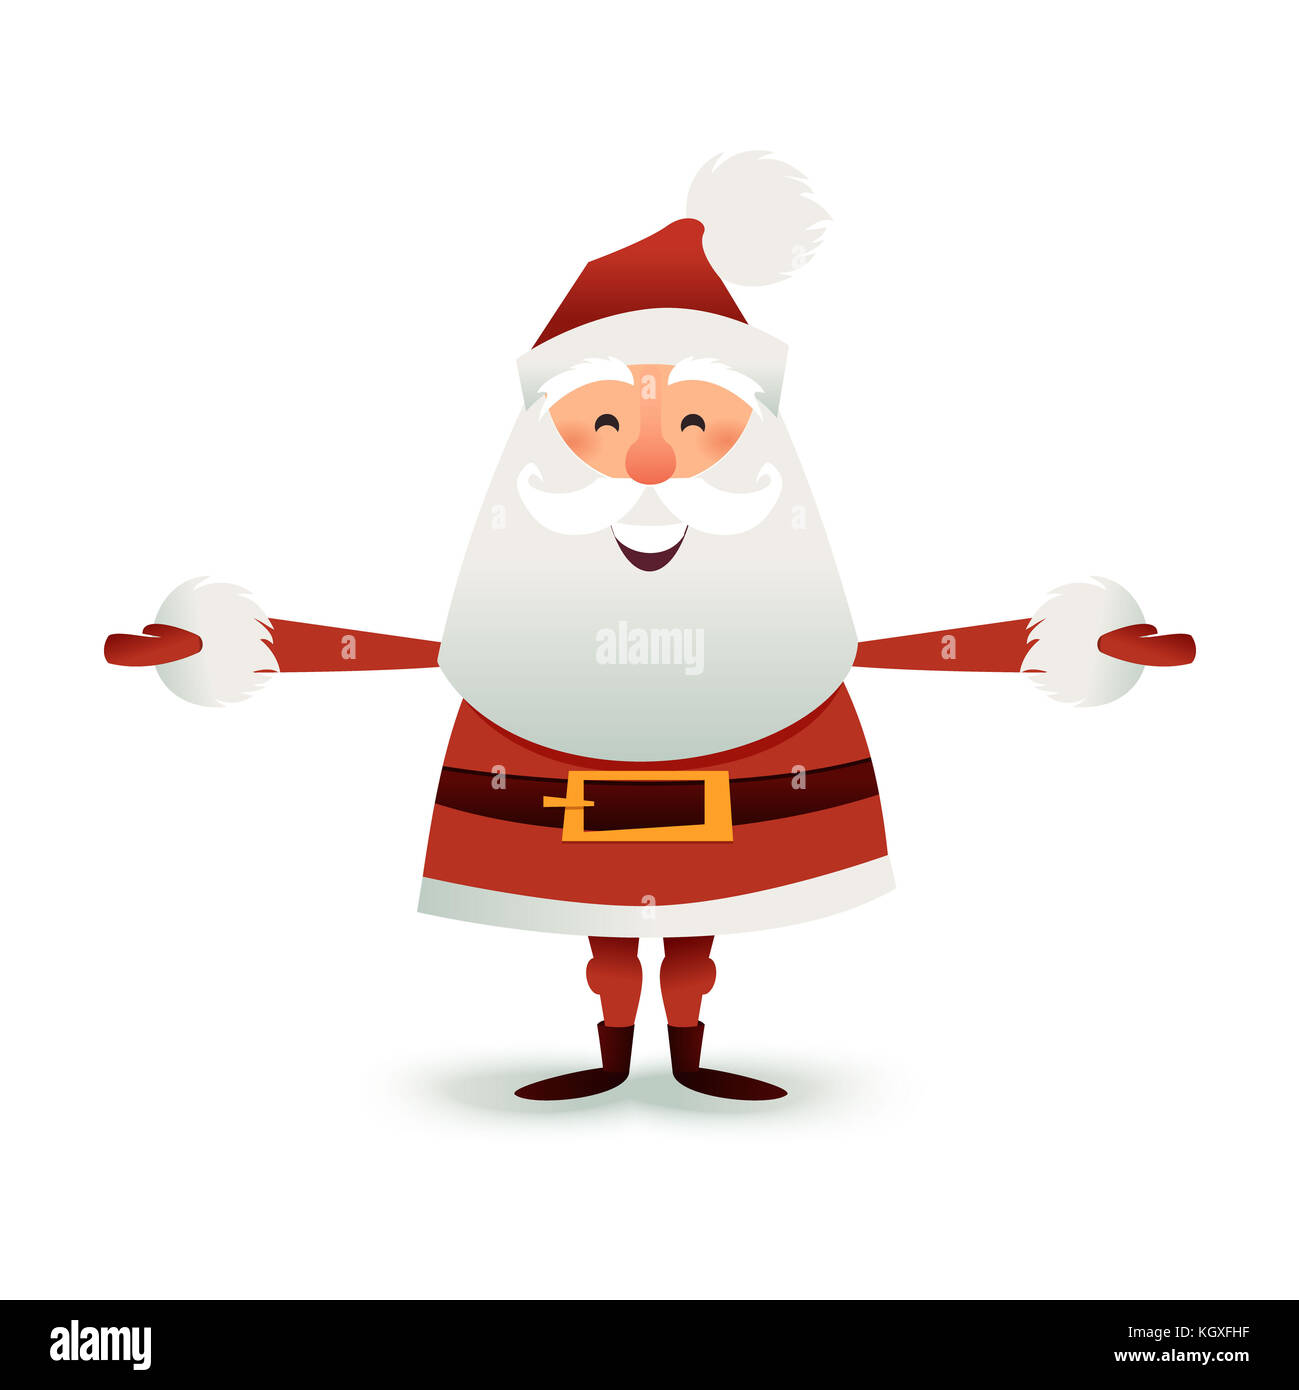 Flache Abbildung des Weihnachtsmanns. Frohe Weihnachten Vater Cartoon-Figur. Niedlicher Weihnachtsmann für das Weihnachtsdesign. Grußkarte für das neue Jahr zur Einladung, herzlichen Glückwunsch. Stockfoto